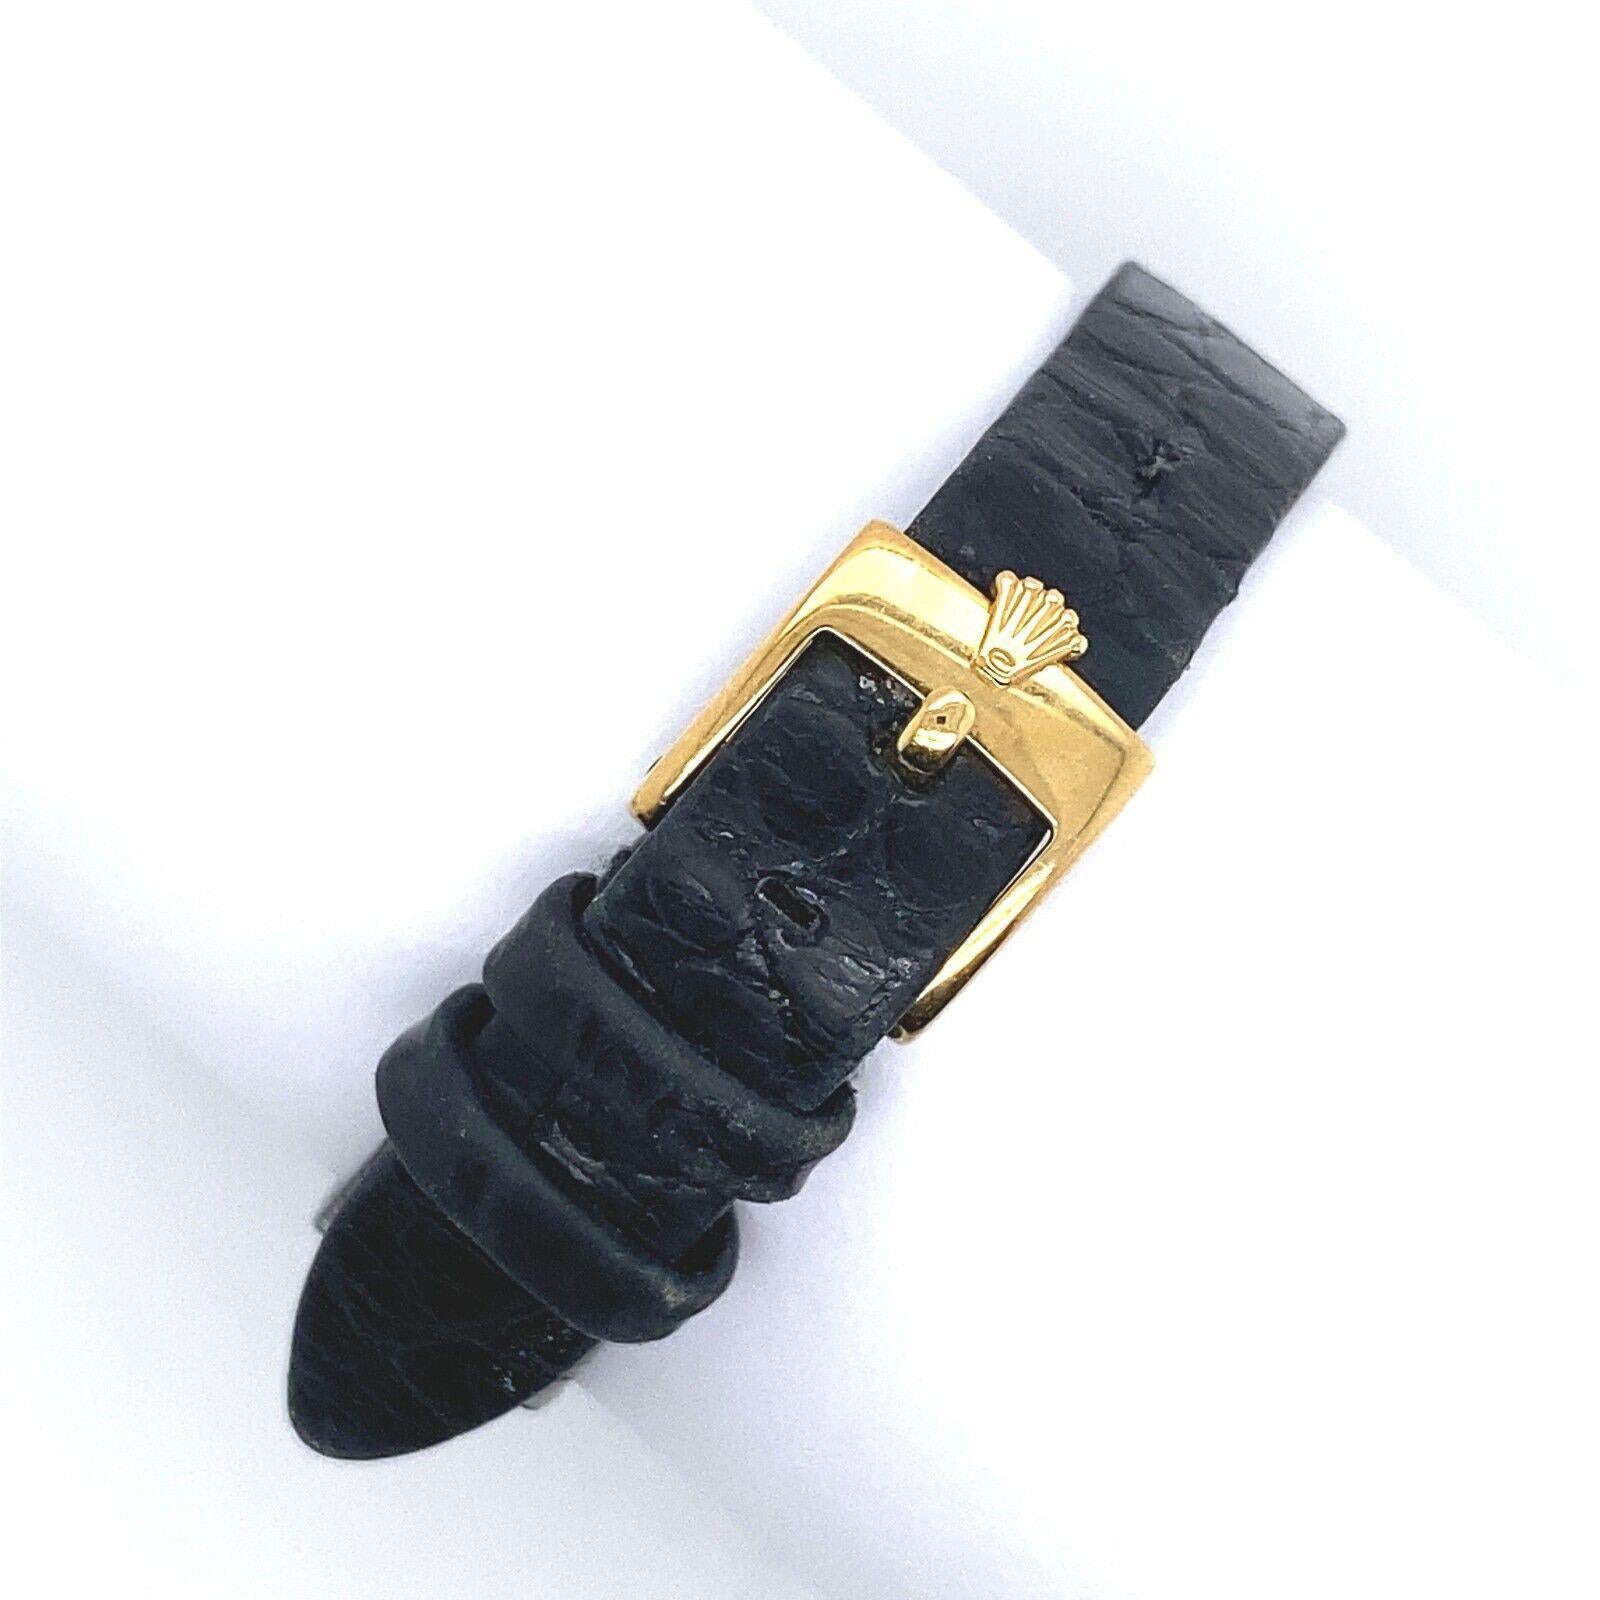 Die Rolex Cellini ist eine elegante Uhr, die hohe Ansprüche an Perfektion und Harmonie in jedem Detail vereint. Sie ist mit Diamanten im Gehäuse und in der Schließe aus 18-karätigem Gelbgold besetzt und hat ein 2-teiliges Armband aus schwarzem